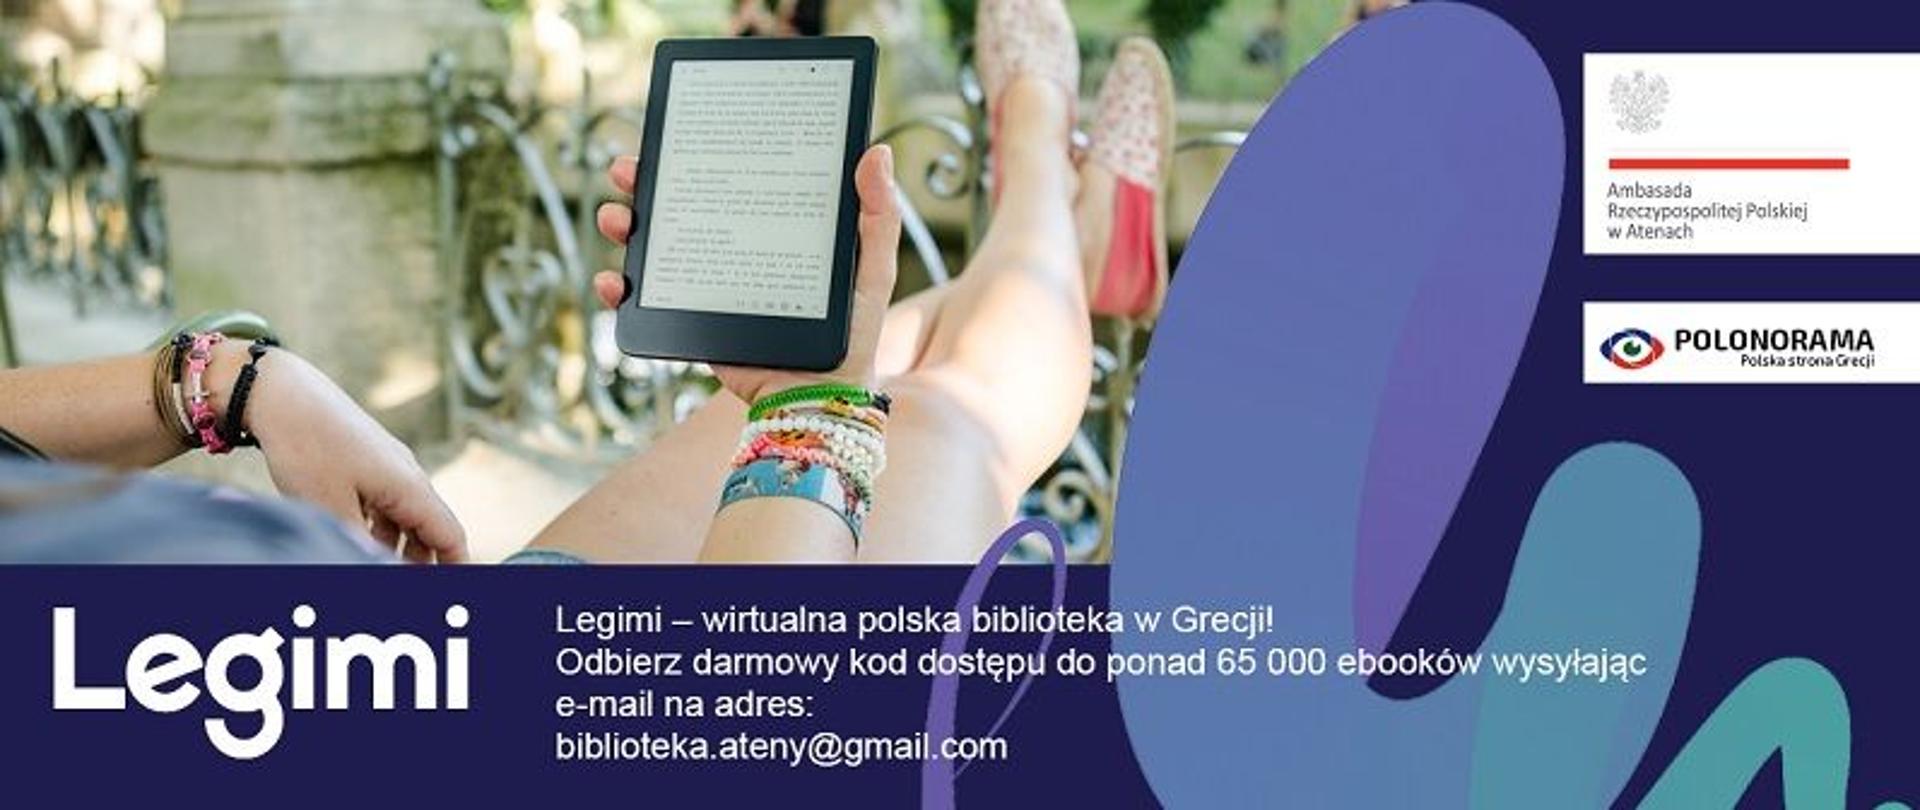 Legimi - wirtualna polska biblioteka w Grecji